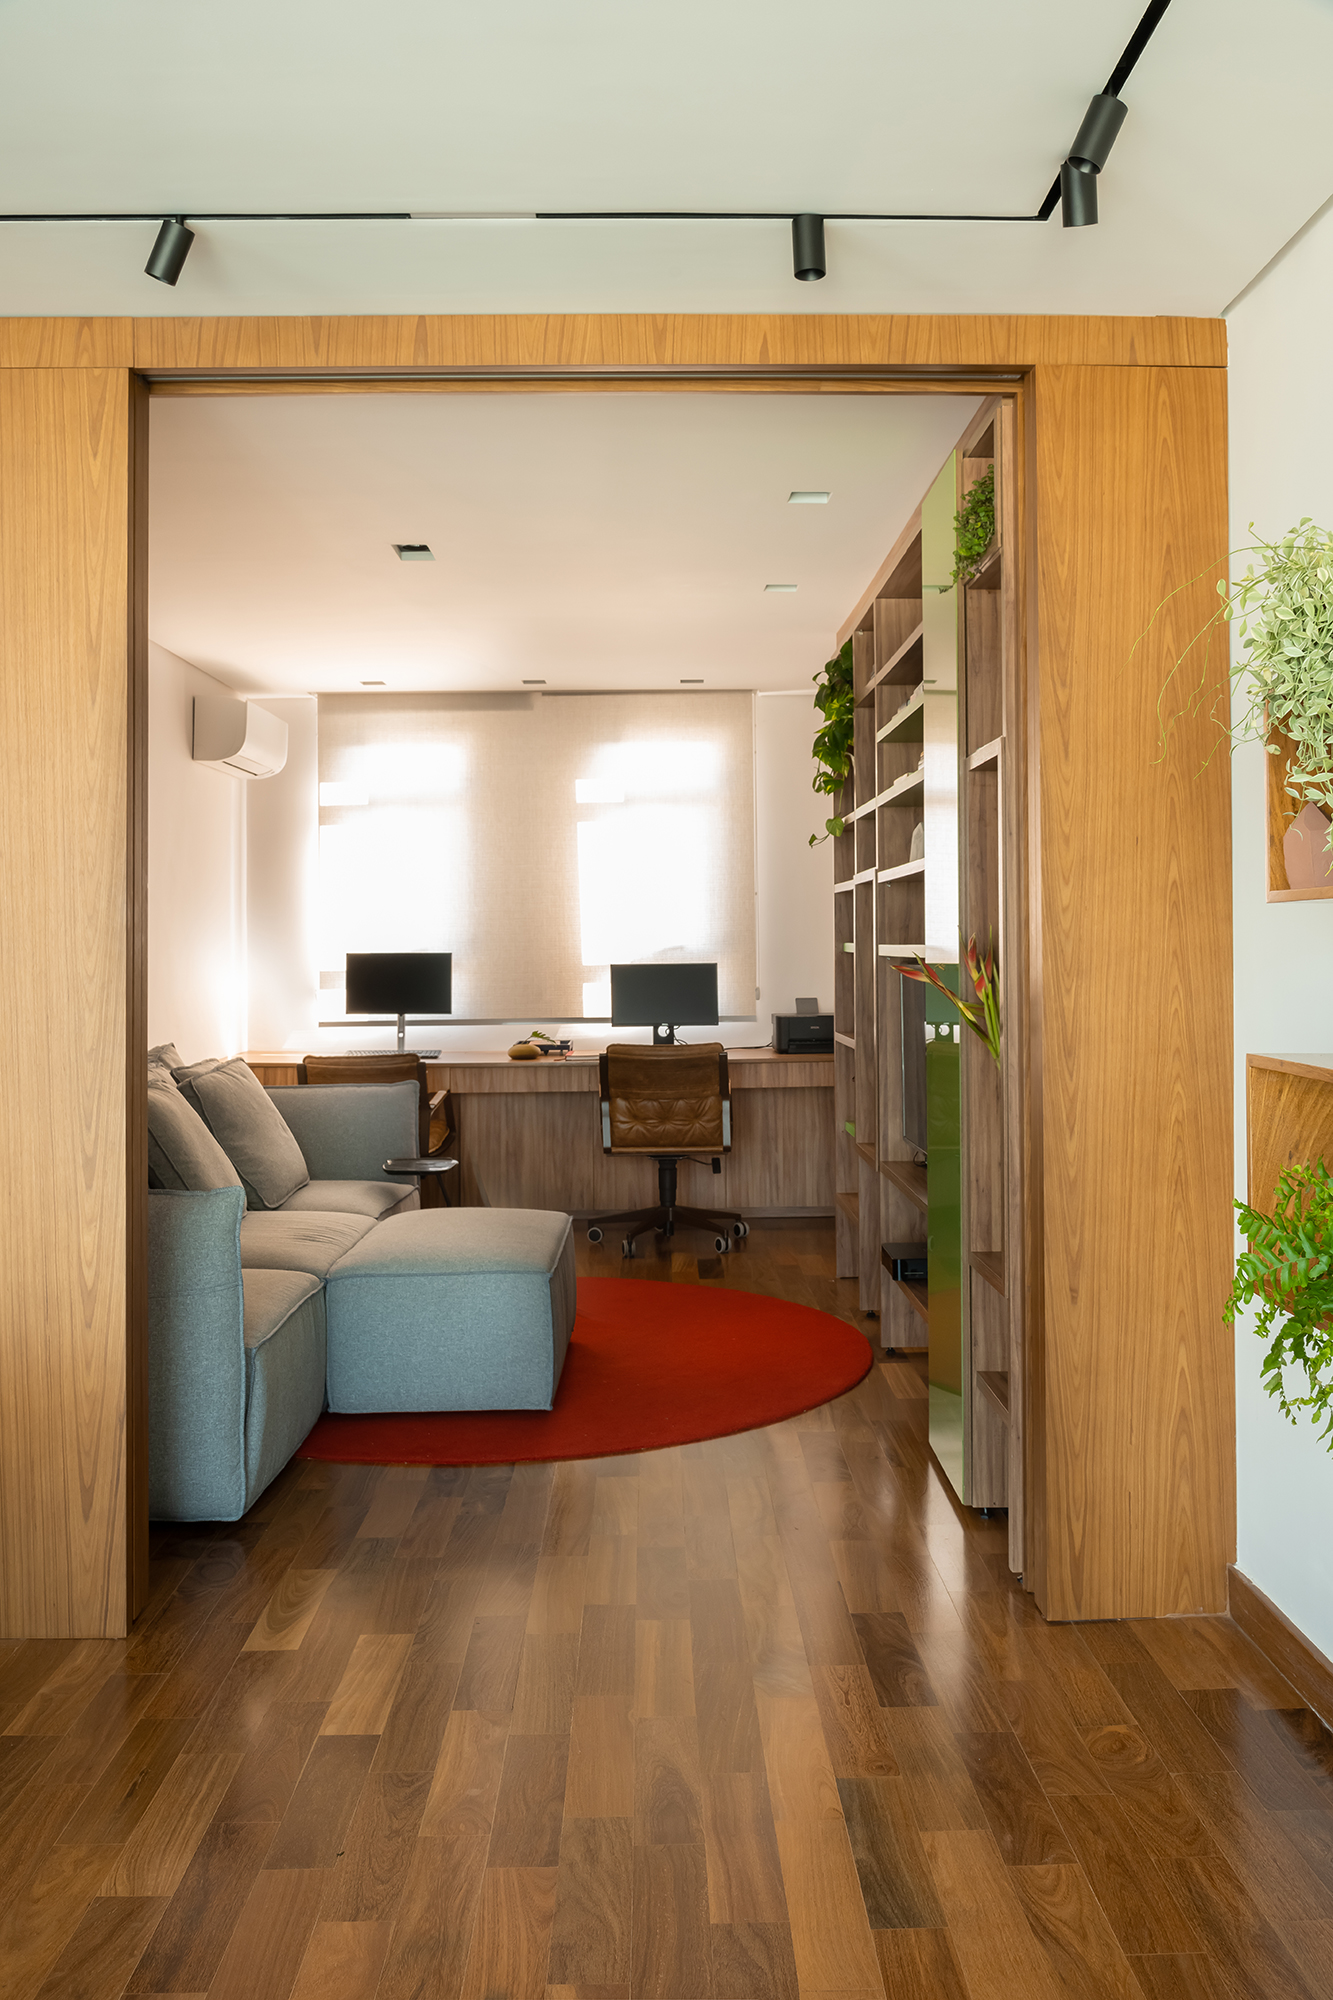 Apartamento de 188 m² ganha dois cooktops na cozinha e balanços na sala, Projeto Raízes Arquitetos. Na foto, home office separado por portas de correr,